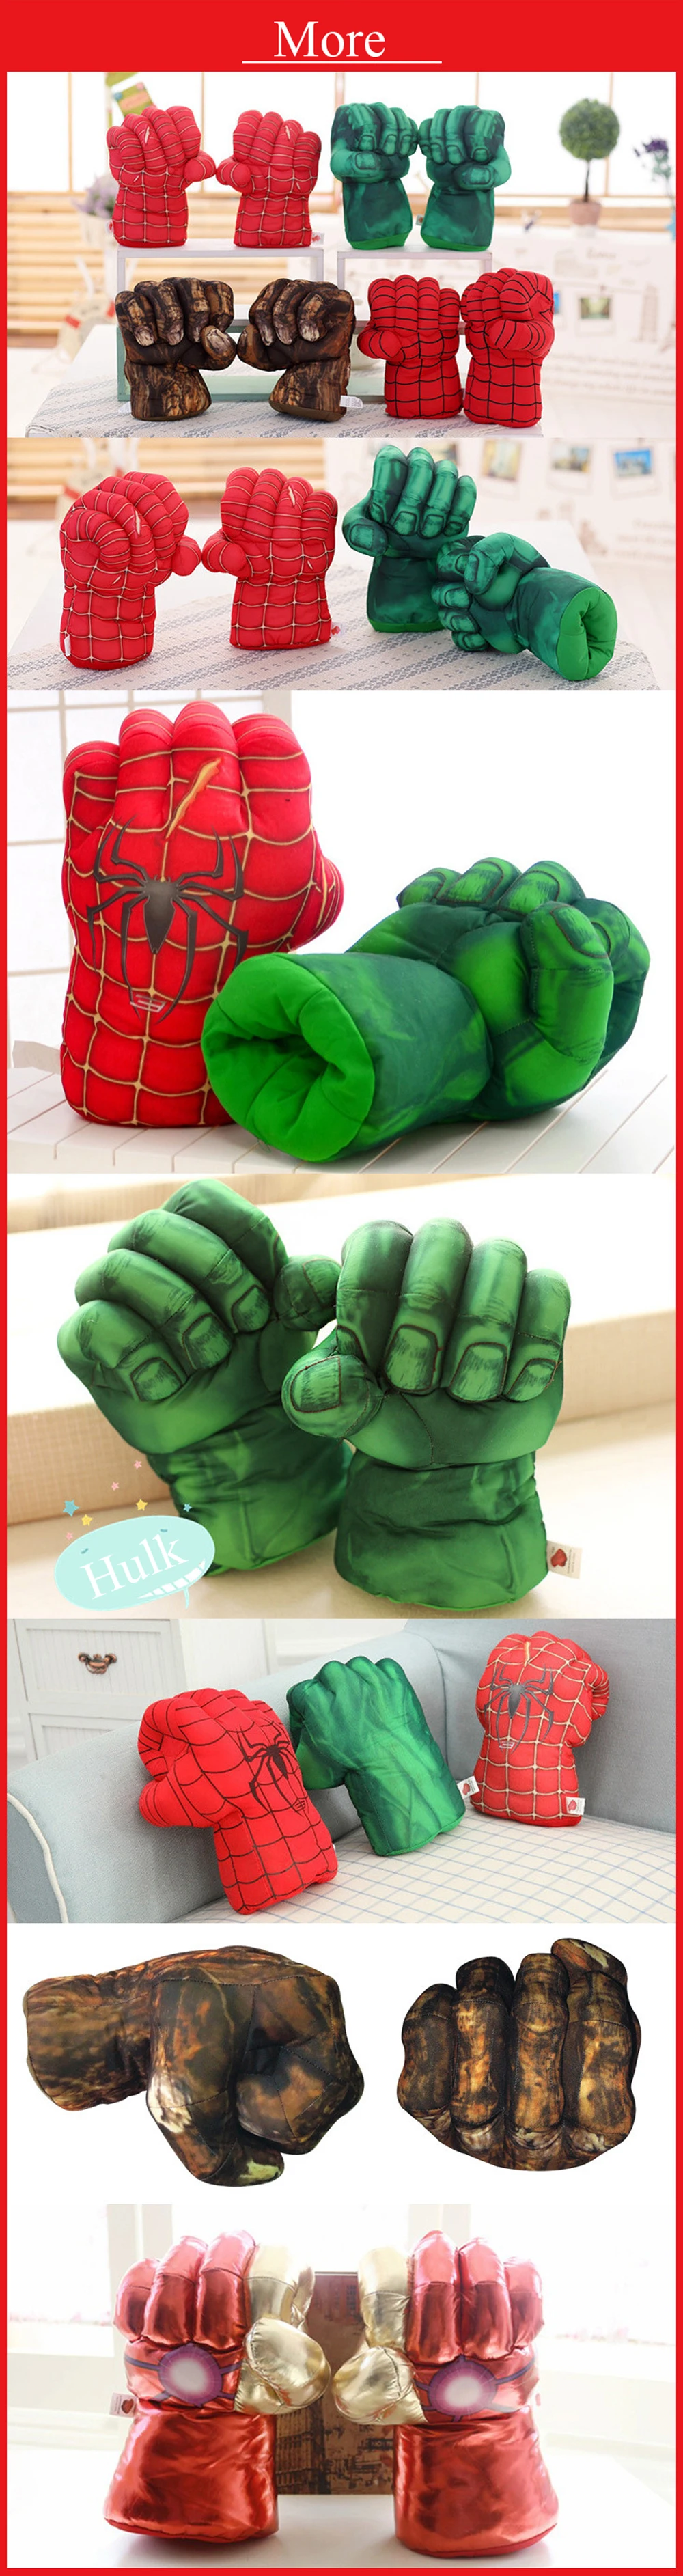 Игрушка Бесконечность войны Марвел Мстители Железный человек Спайдермен боксерские косплей перчатки игрушки боксерские перчатки Халк Аниме косплей детские экшн-игрушки